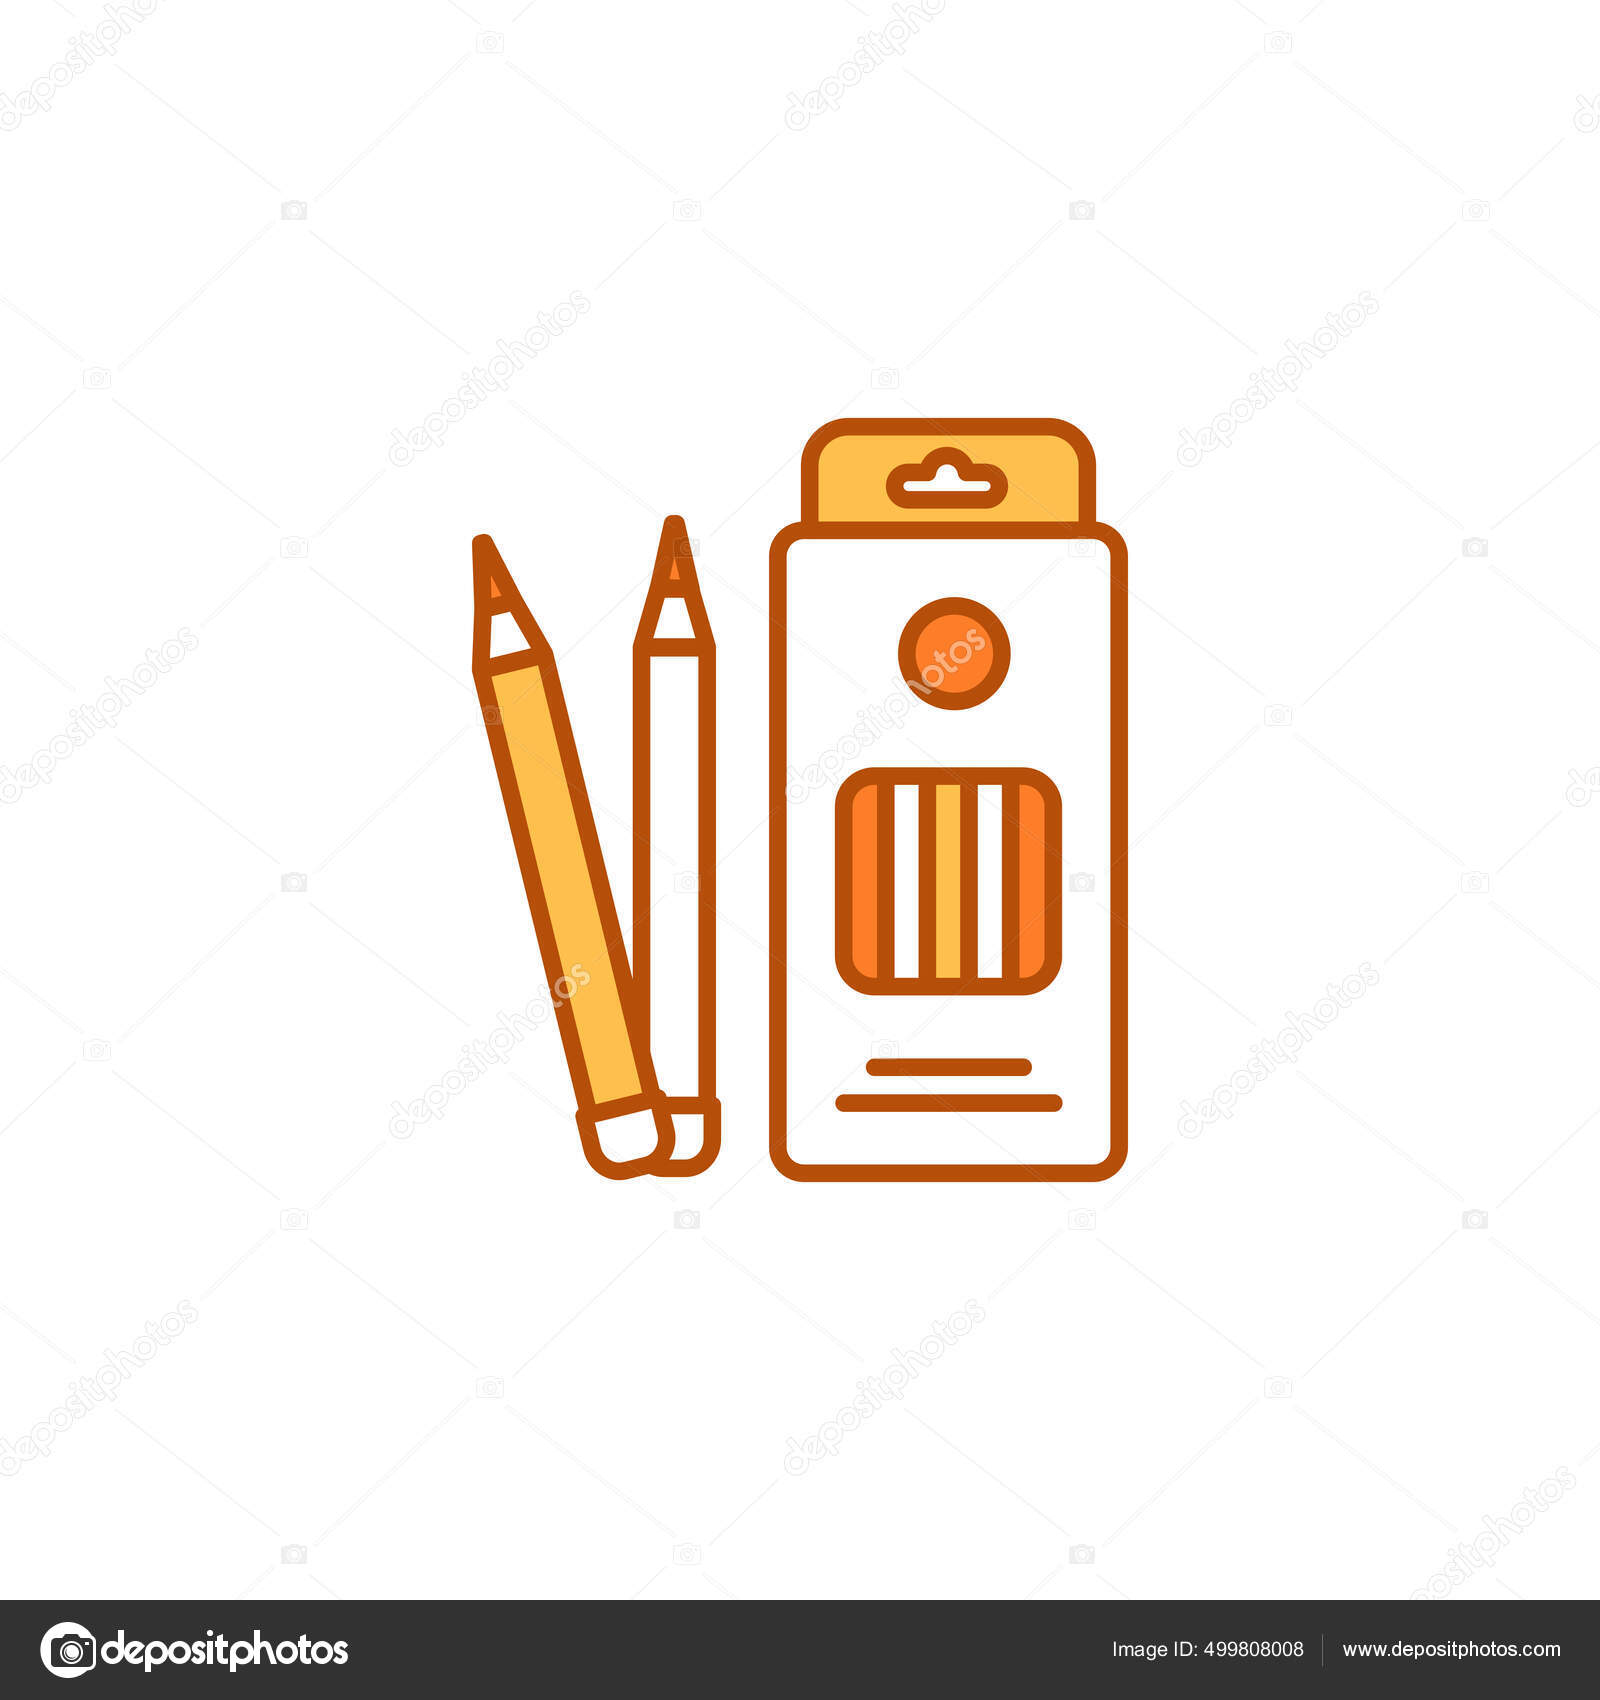 https://st2.depositphotos.com/16244452/49980/v/1600/depositphotos_499808008-stock-illustration-box-colored-pencils-color-line.jpg